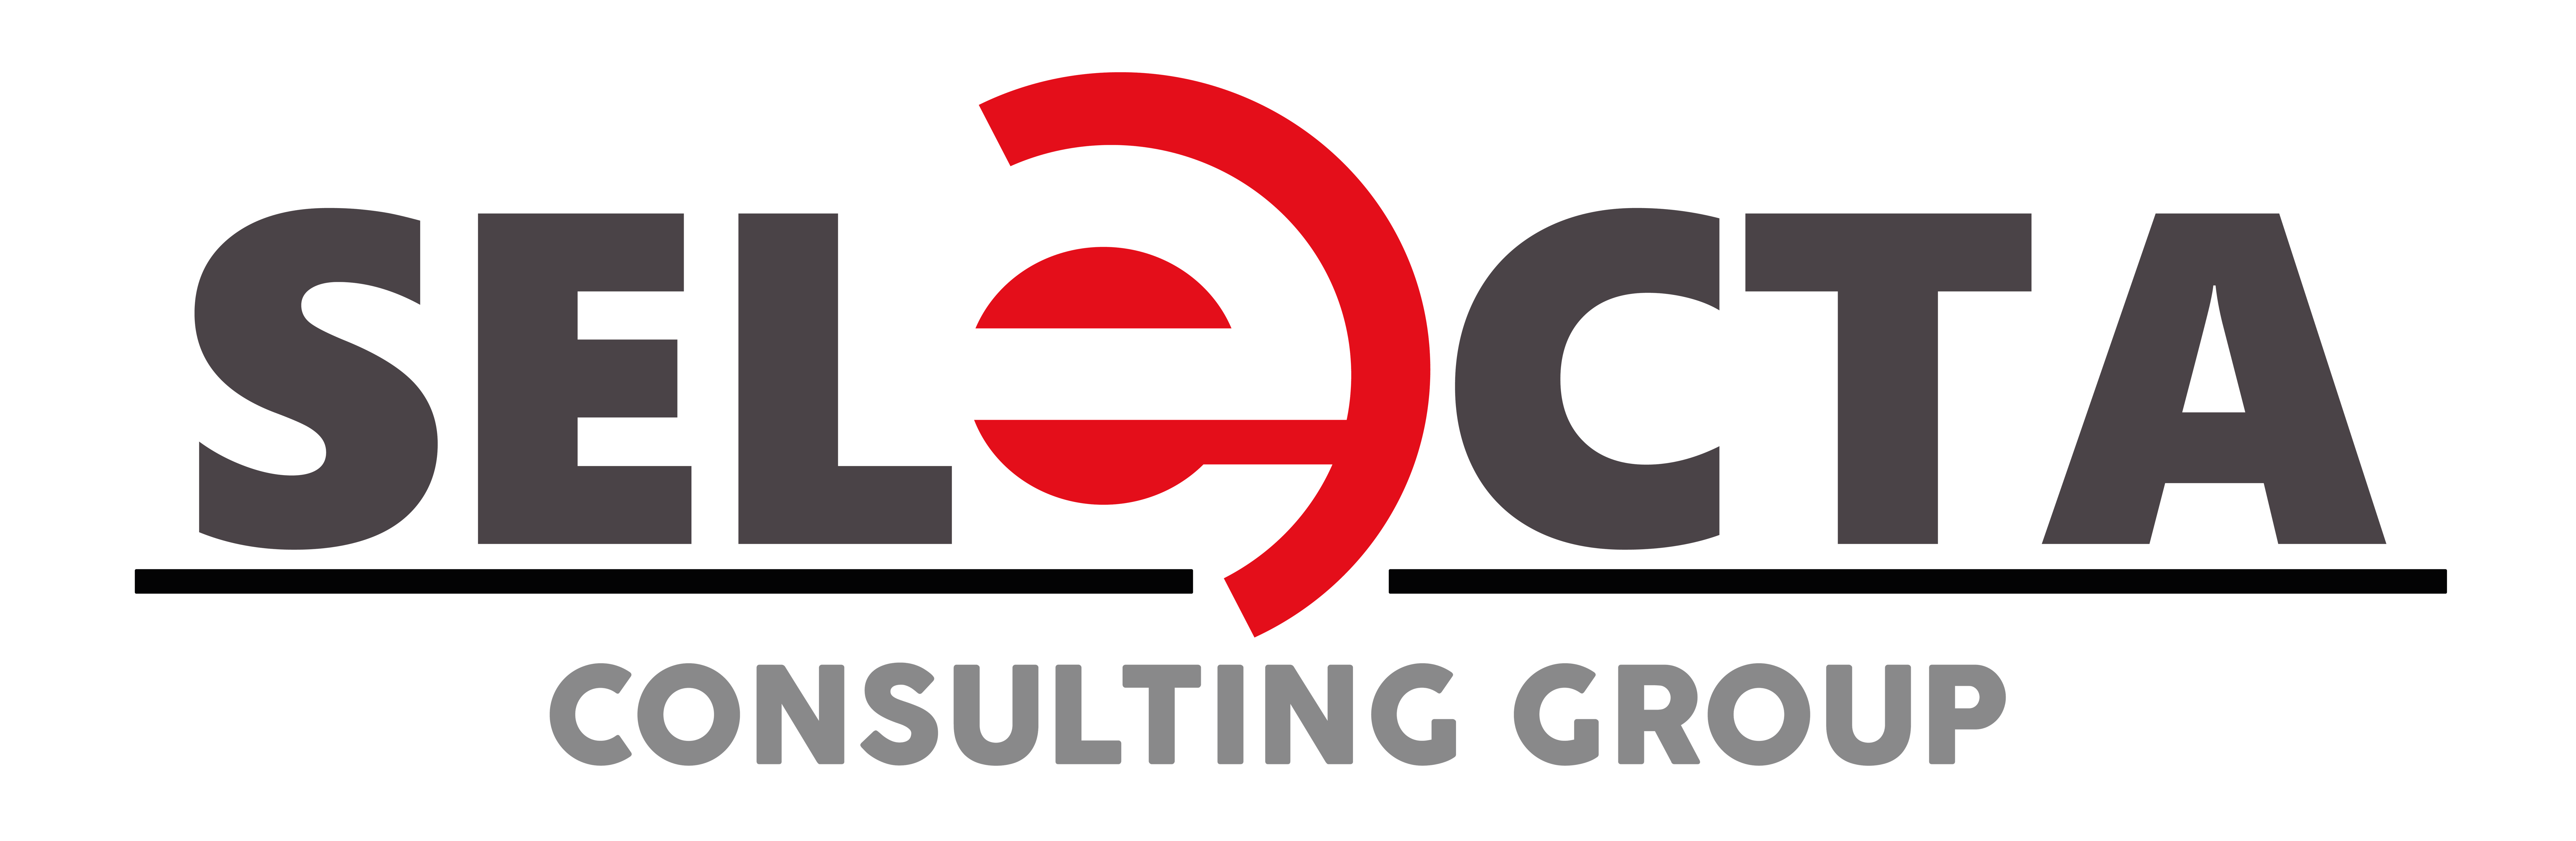 Logo Selecta Alta_Mesa de trabajo 1